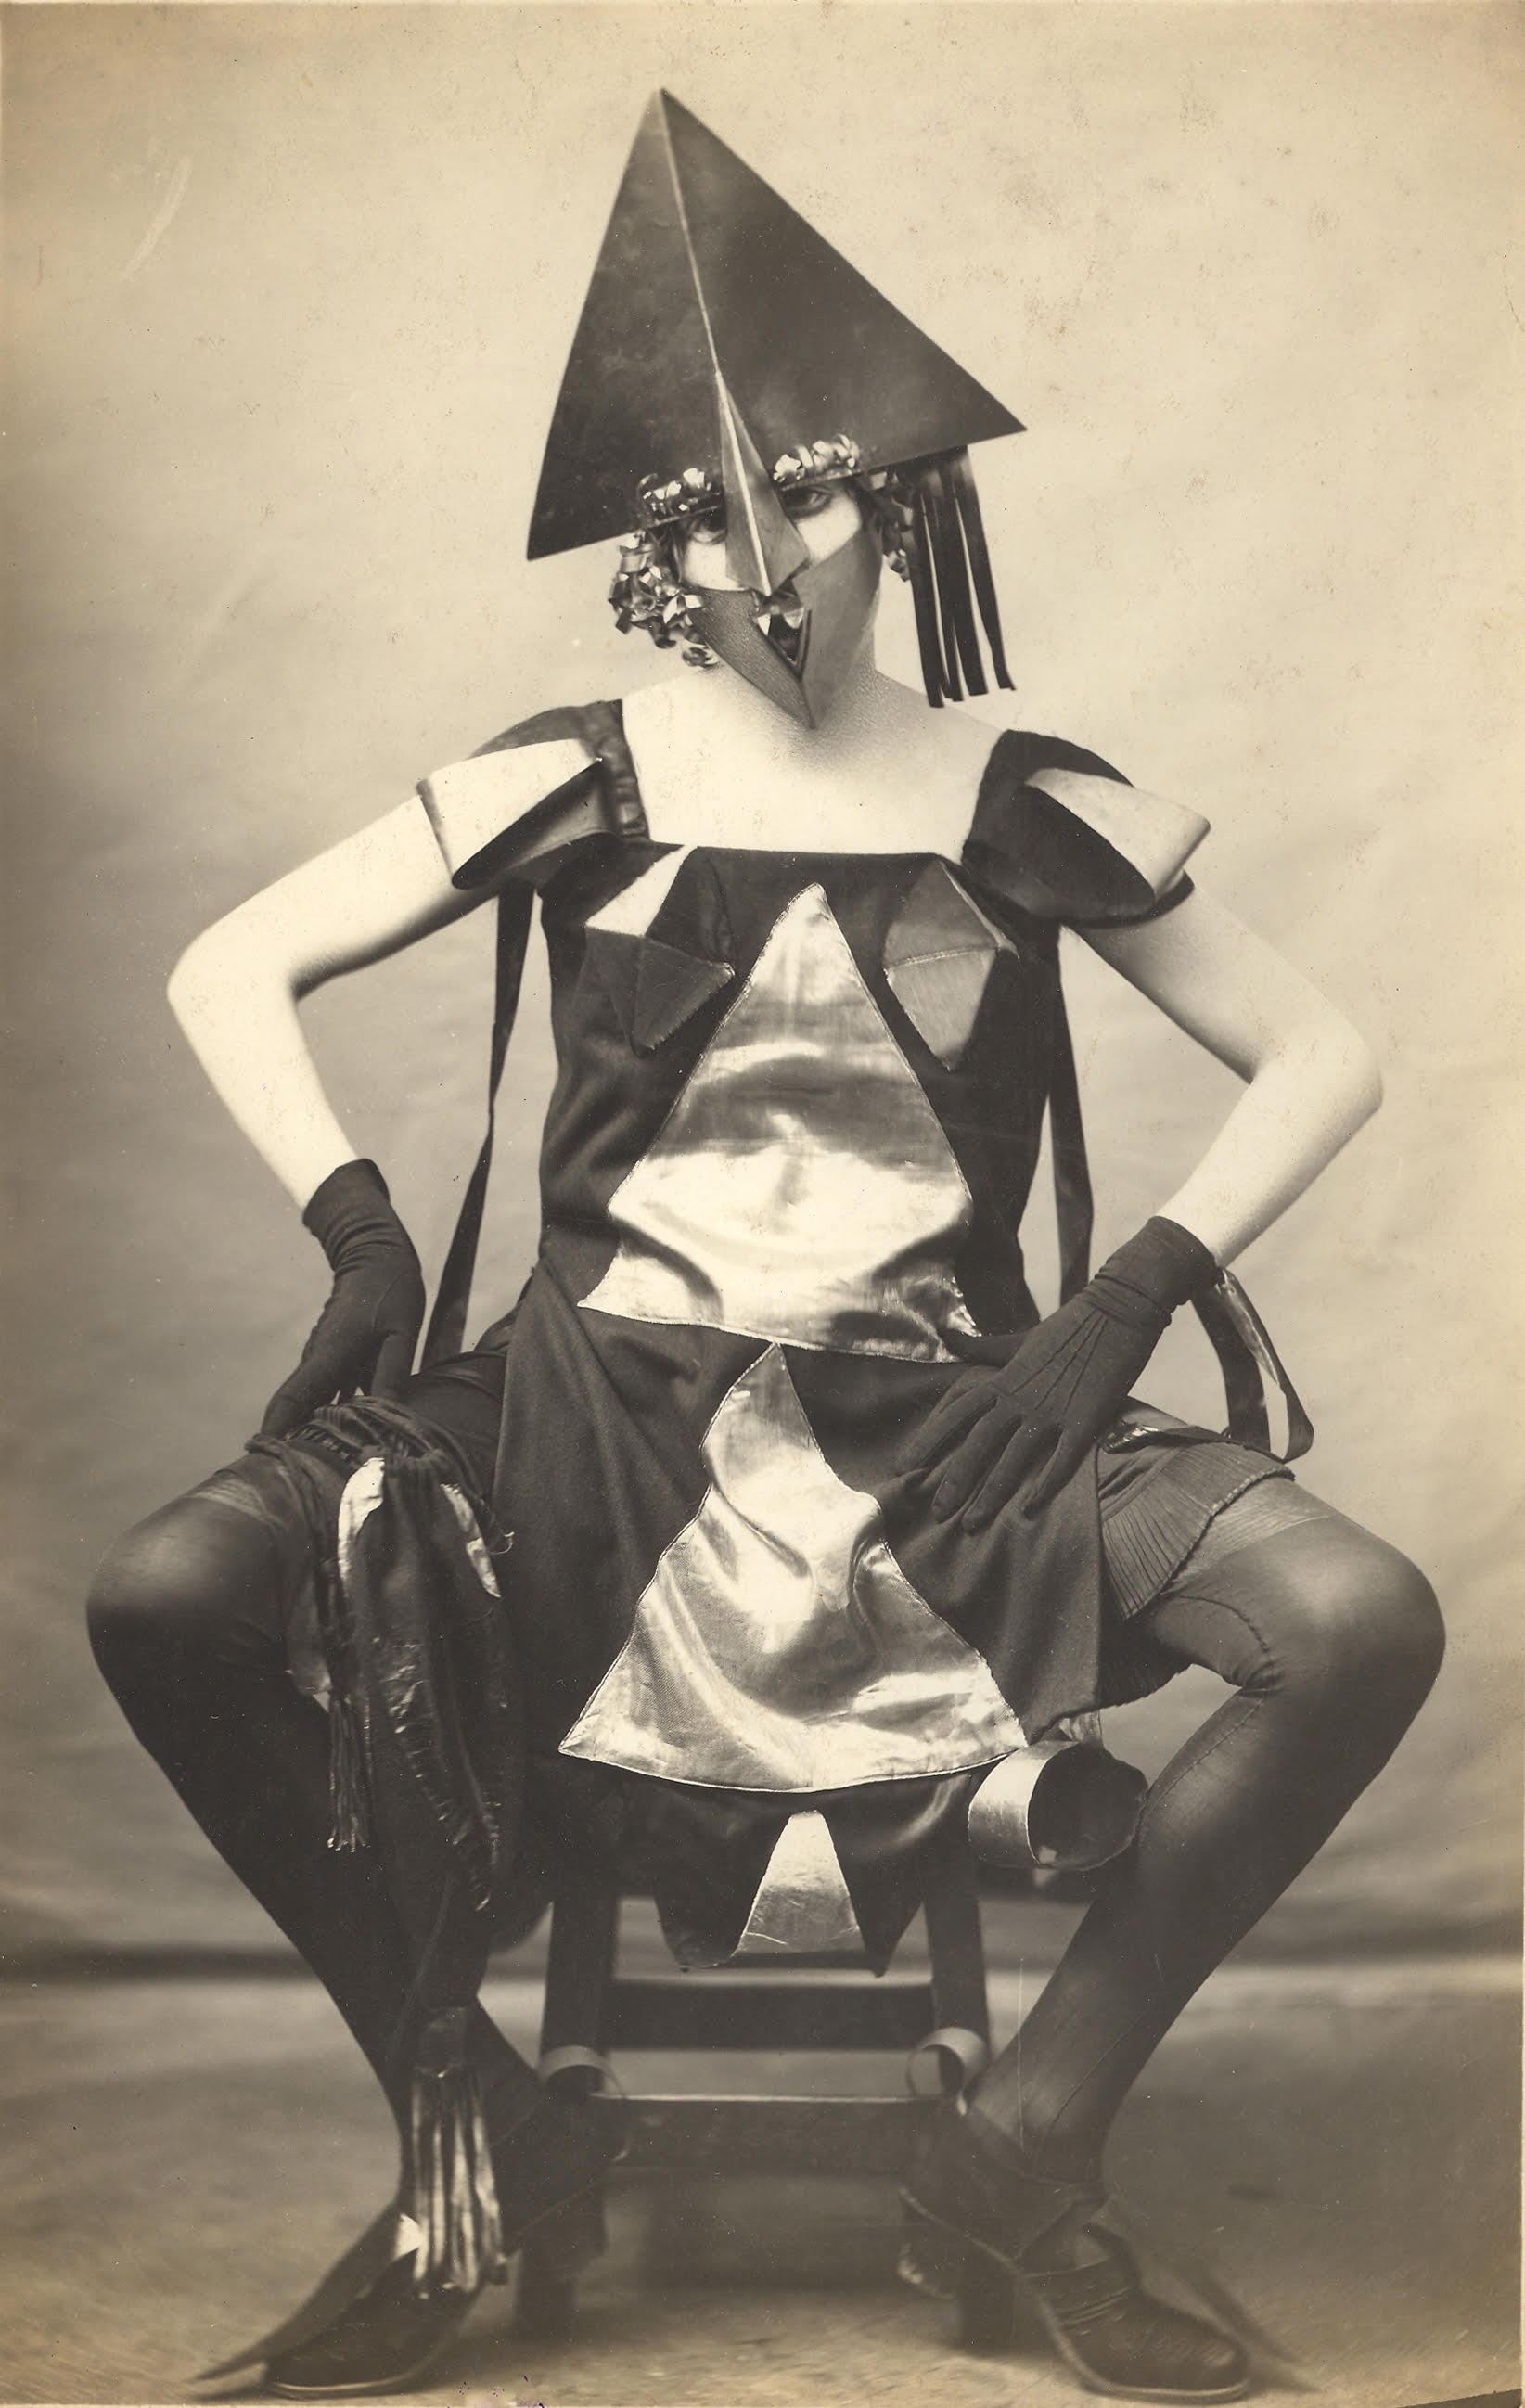 "A day with Marie Vassilieff", Pierre Delbo (photographe), "Costume Arlequine de Marie Vassilieff pour le Bal Banal", 1924, Collection Claude Bernès. Droits réservés.